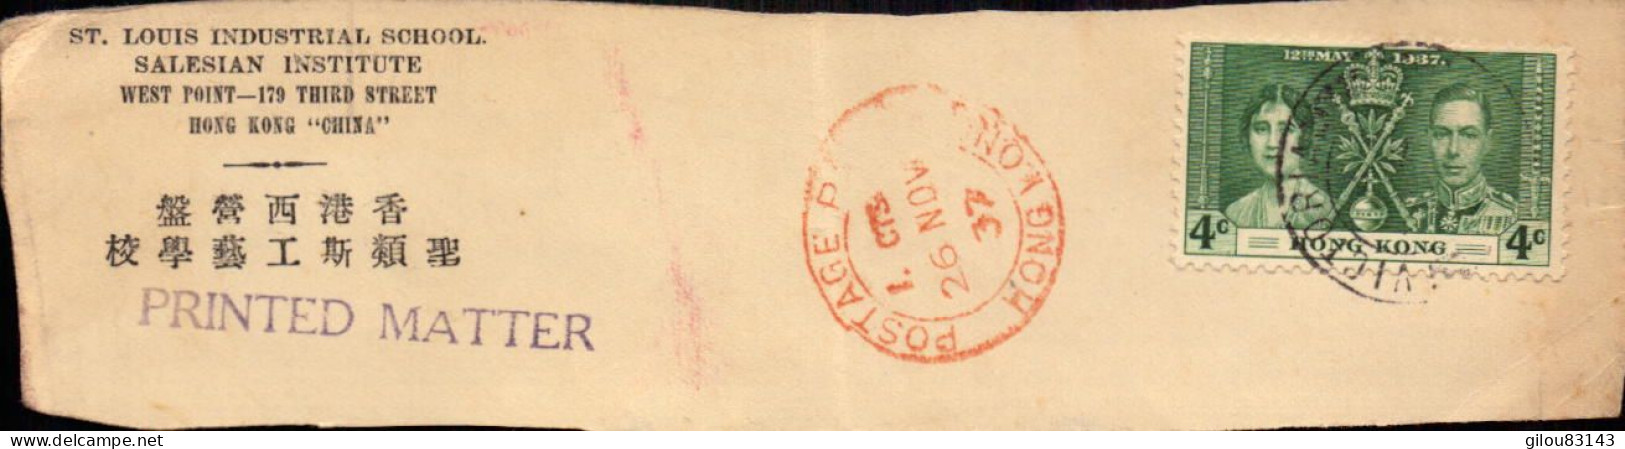 Fragment De Lettre, Hong-Kong, Salesian Institute, 4c Victoria (colonie Britanique) - Postmark Collection